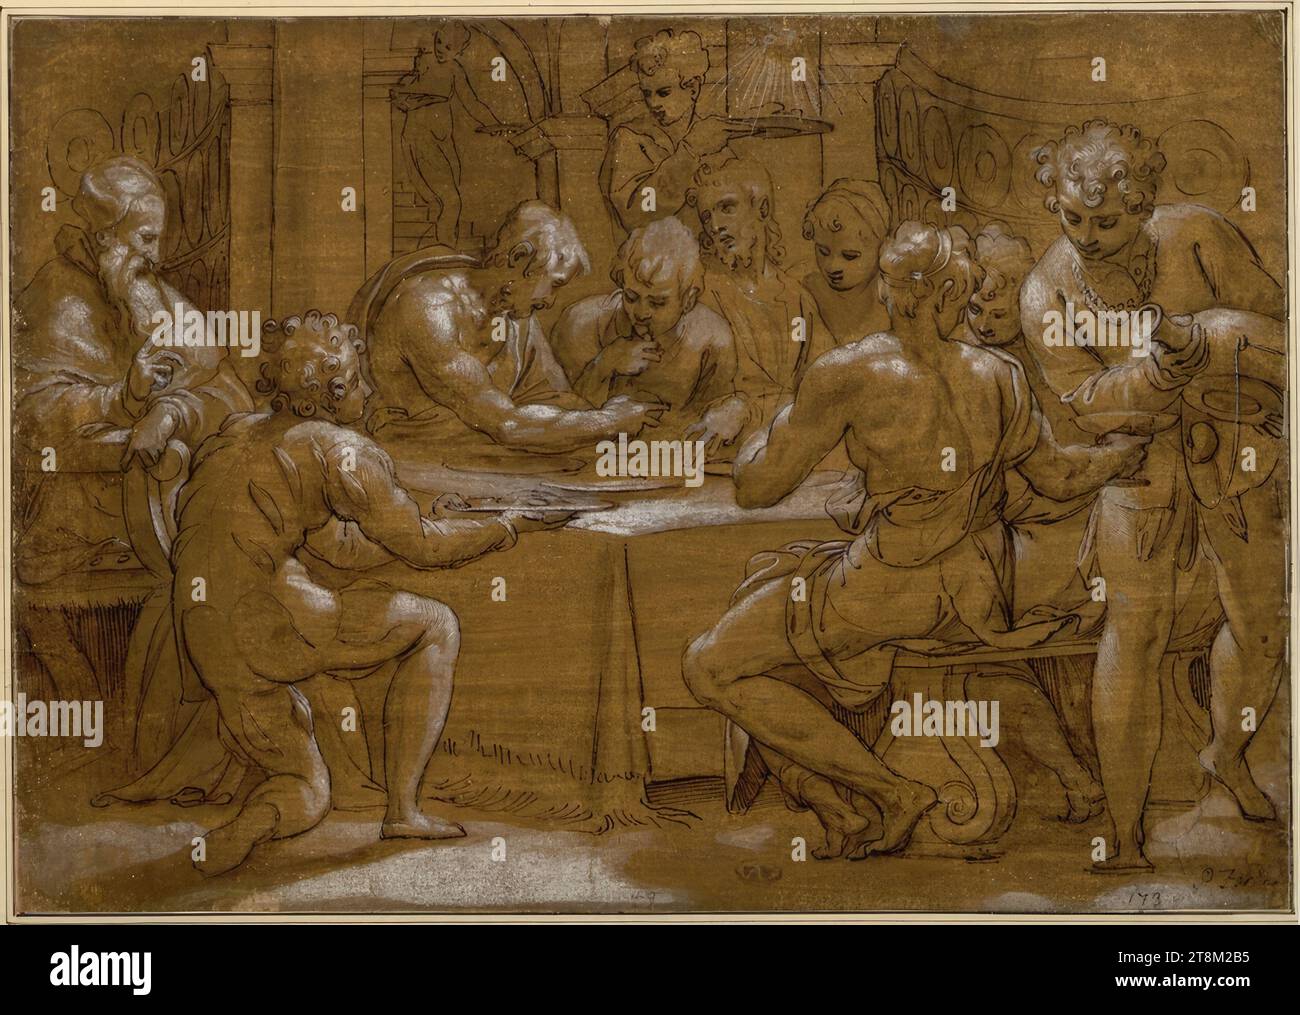 Papst Gregor der große teilt seine Mahlzeit mit den Armen, Paolo Farinato (Verona 1524 - 1606 Verona), zeichnet, zeichnet, zeichnet, wascht, mit weiß erhöht, 25,8 x 36,7 cm, Damery; r.b. Herzog Albert von Sachsen-Teschen, unten rechts in alter Schreibschrift 'P. Farinati' und '173'; unten in Kreide '49.'; rechts die Schnecke, Farinatis Künstlerschild Stockfoto